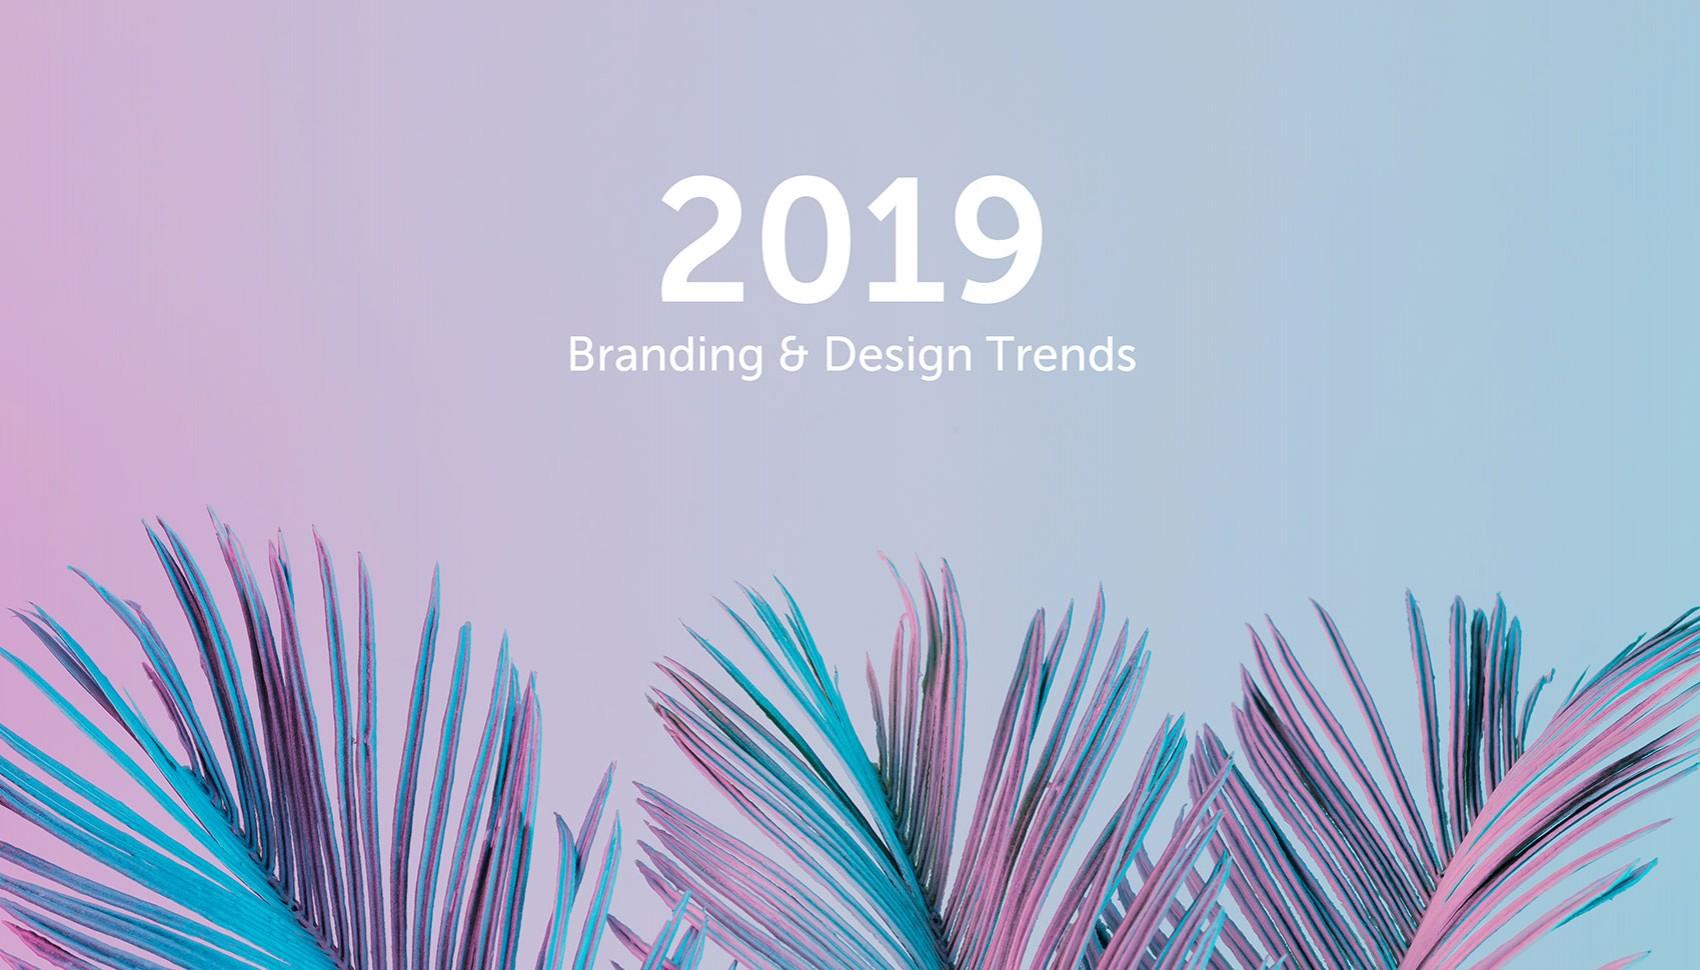 branding agency dubai - Image of 2019 Branding and Design Trends